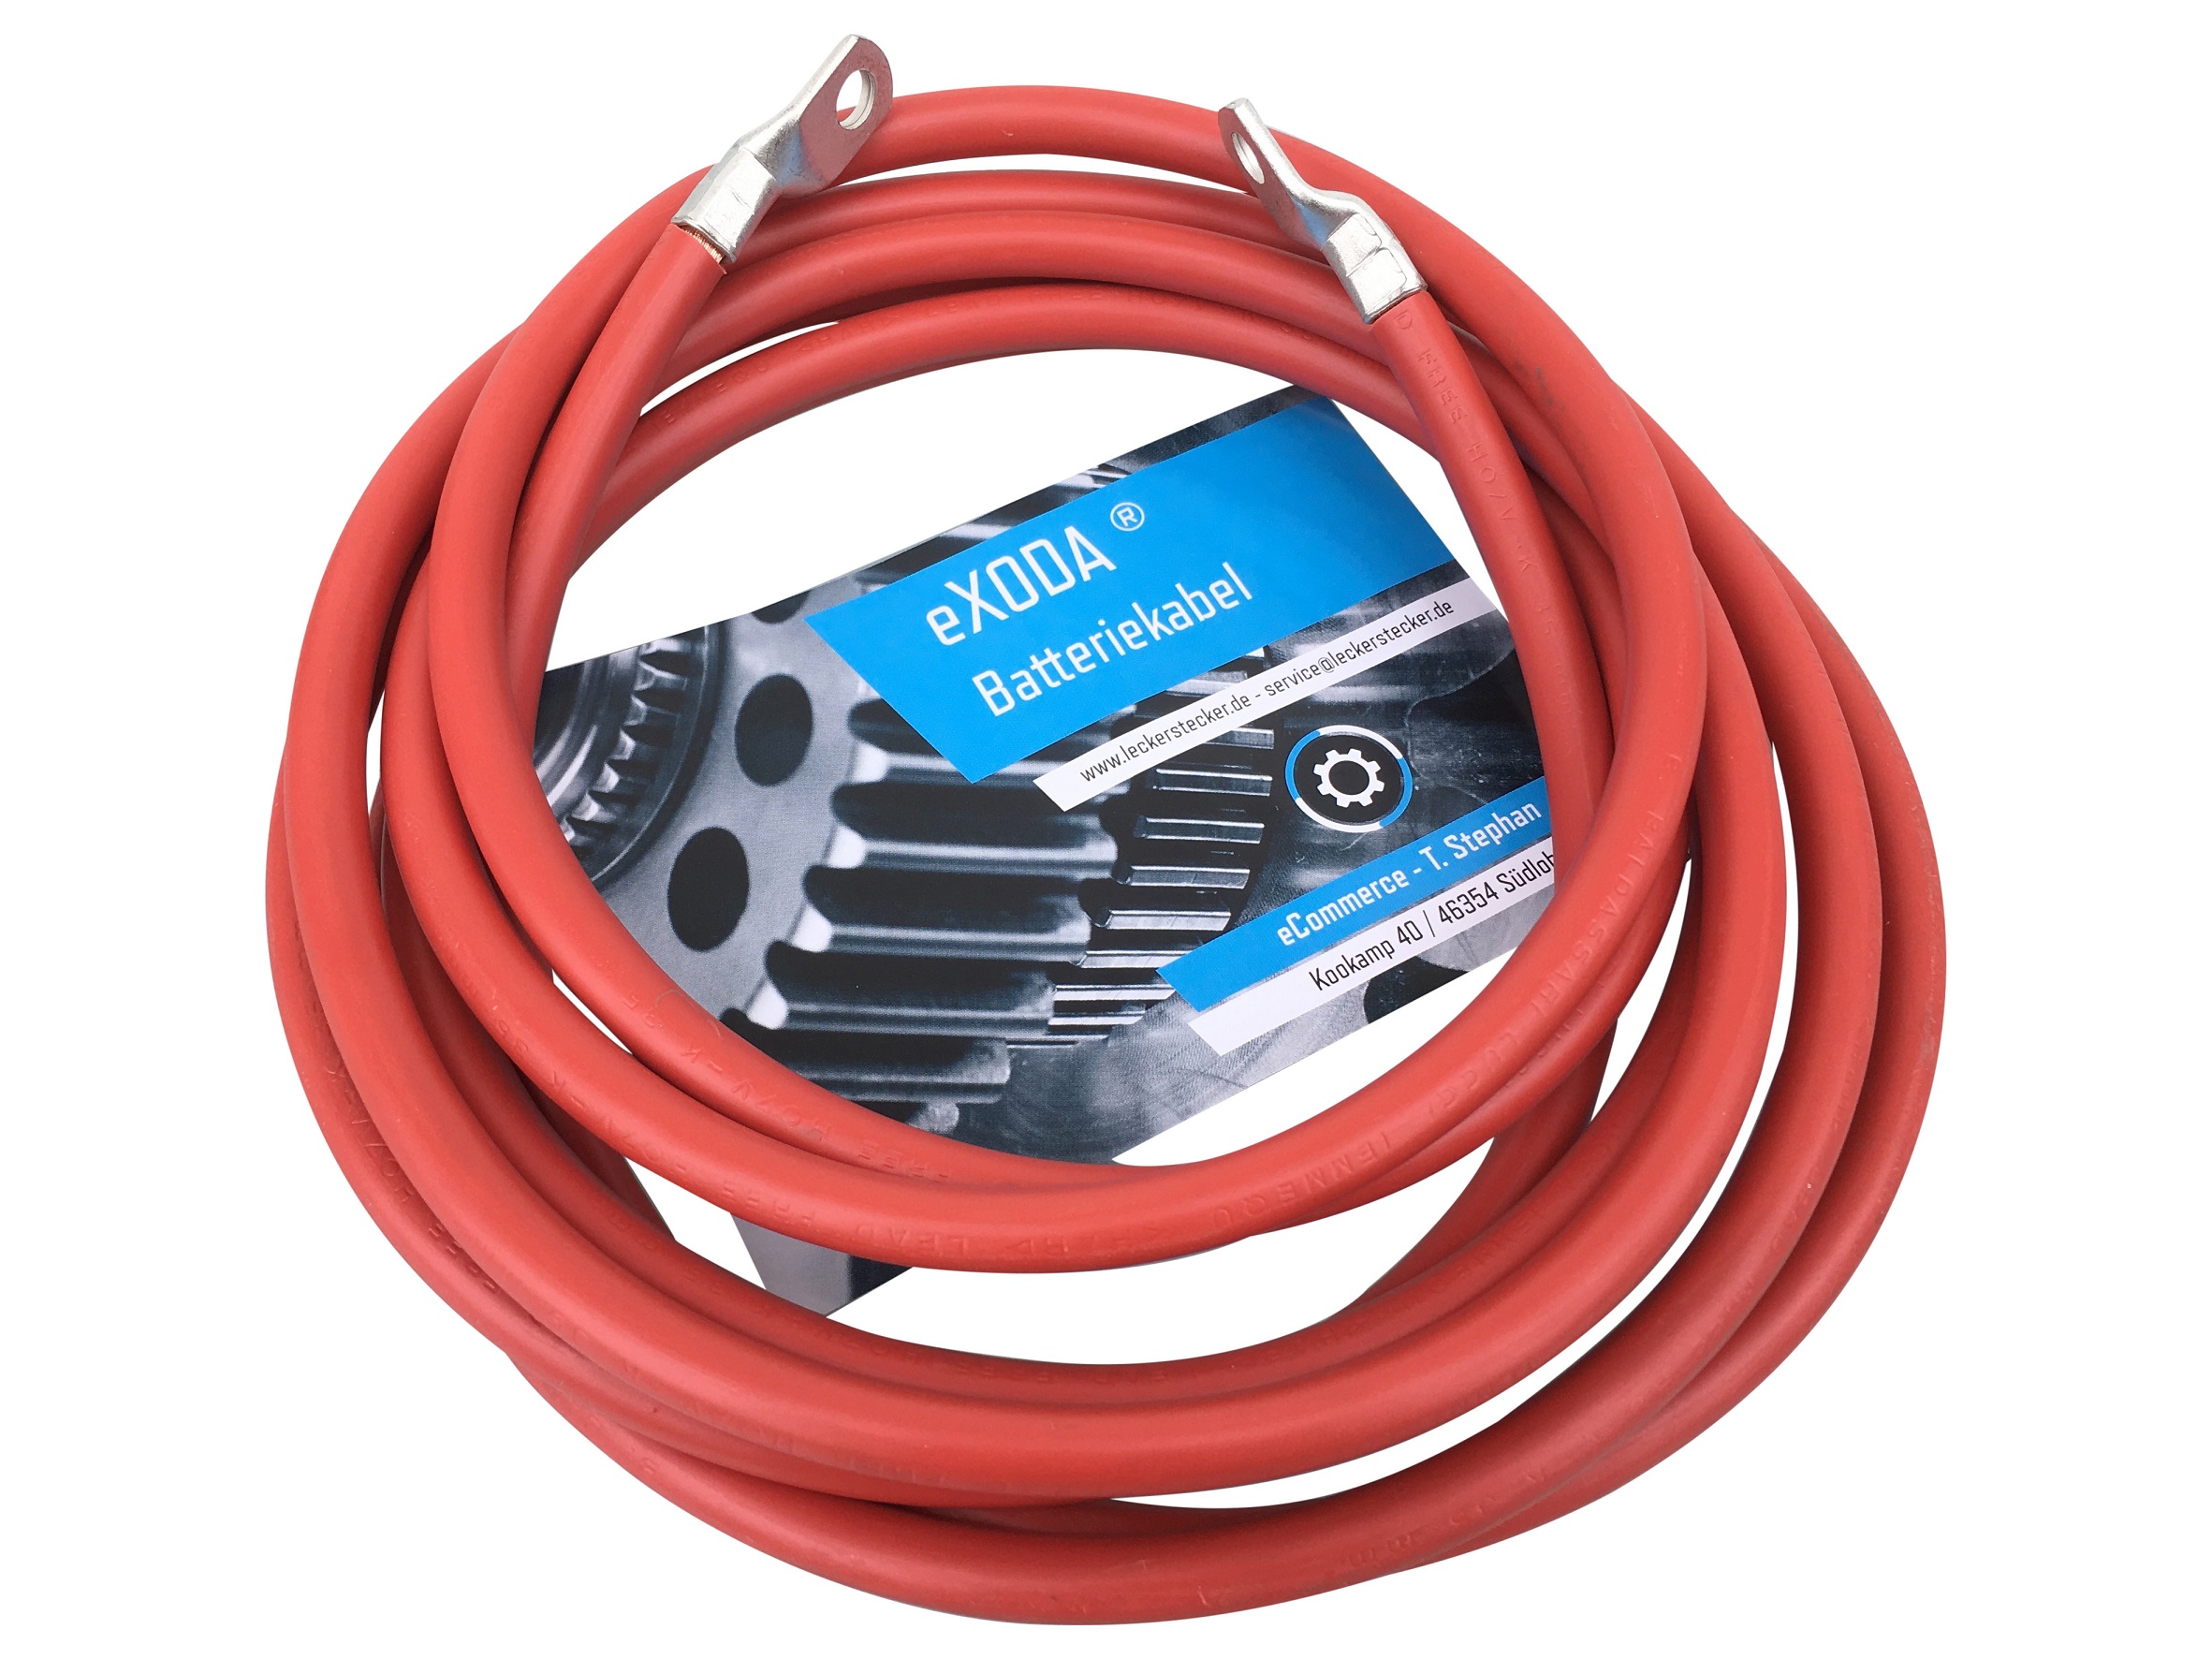 Kabel 5m in rot und 35mm2 Pressösen M8 konfektioniert